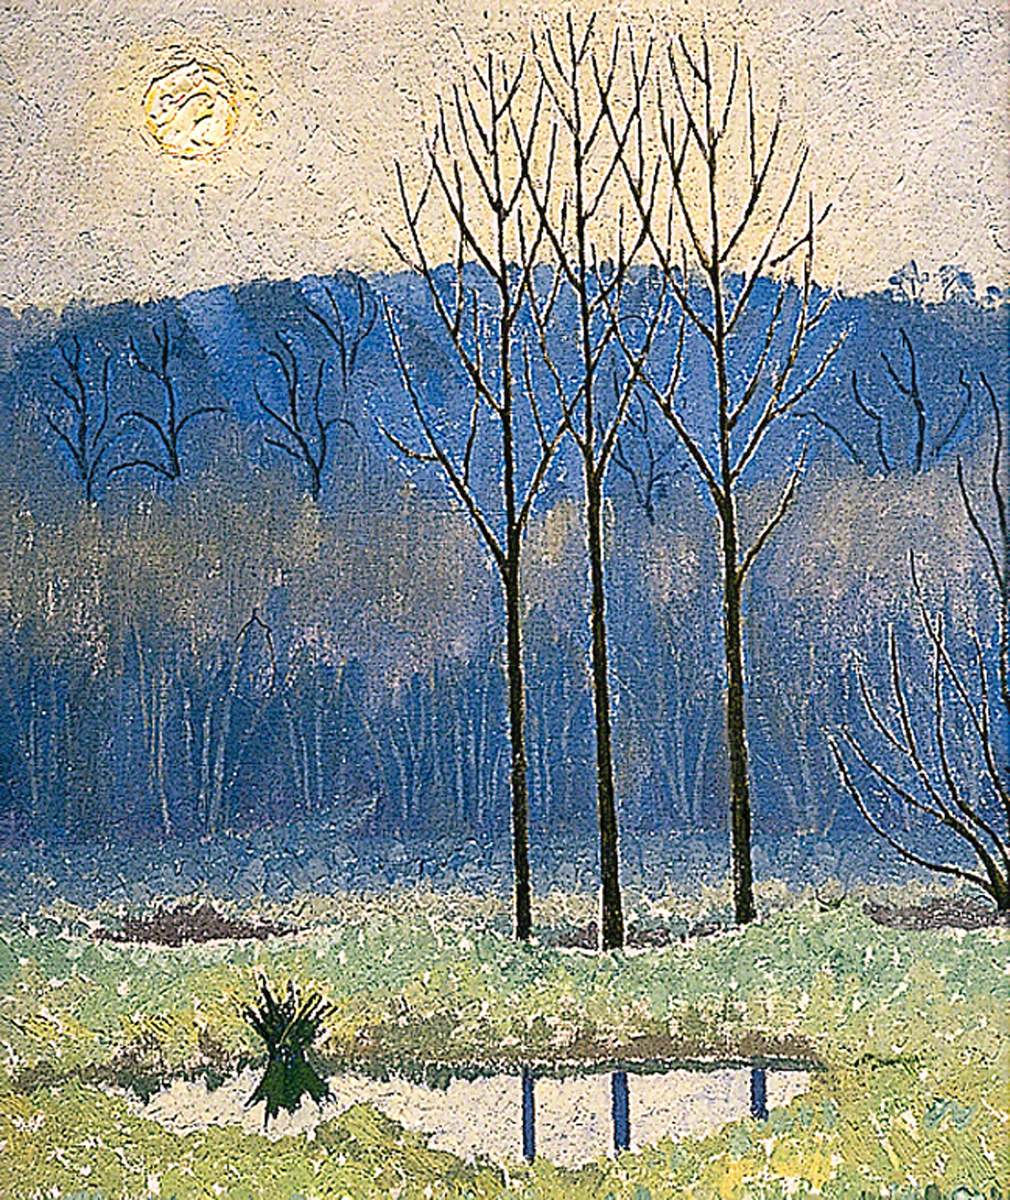 Winter Landscape (circa 1925)